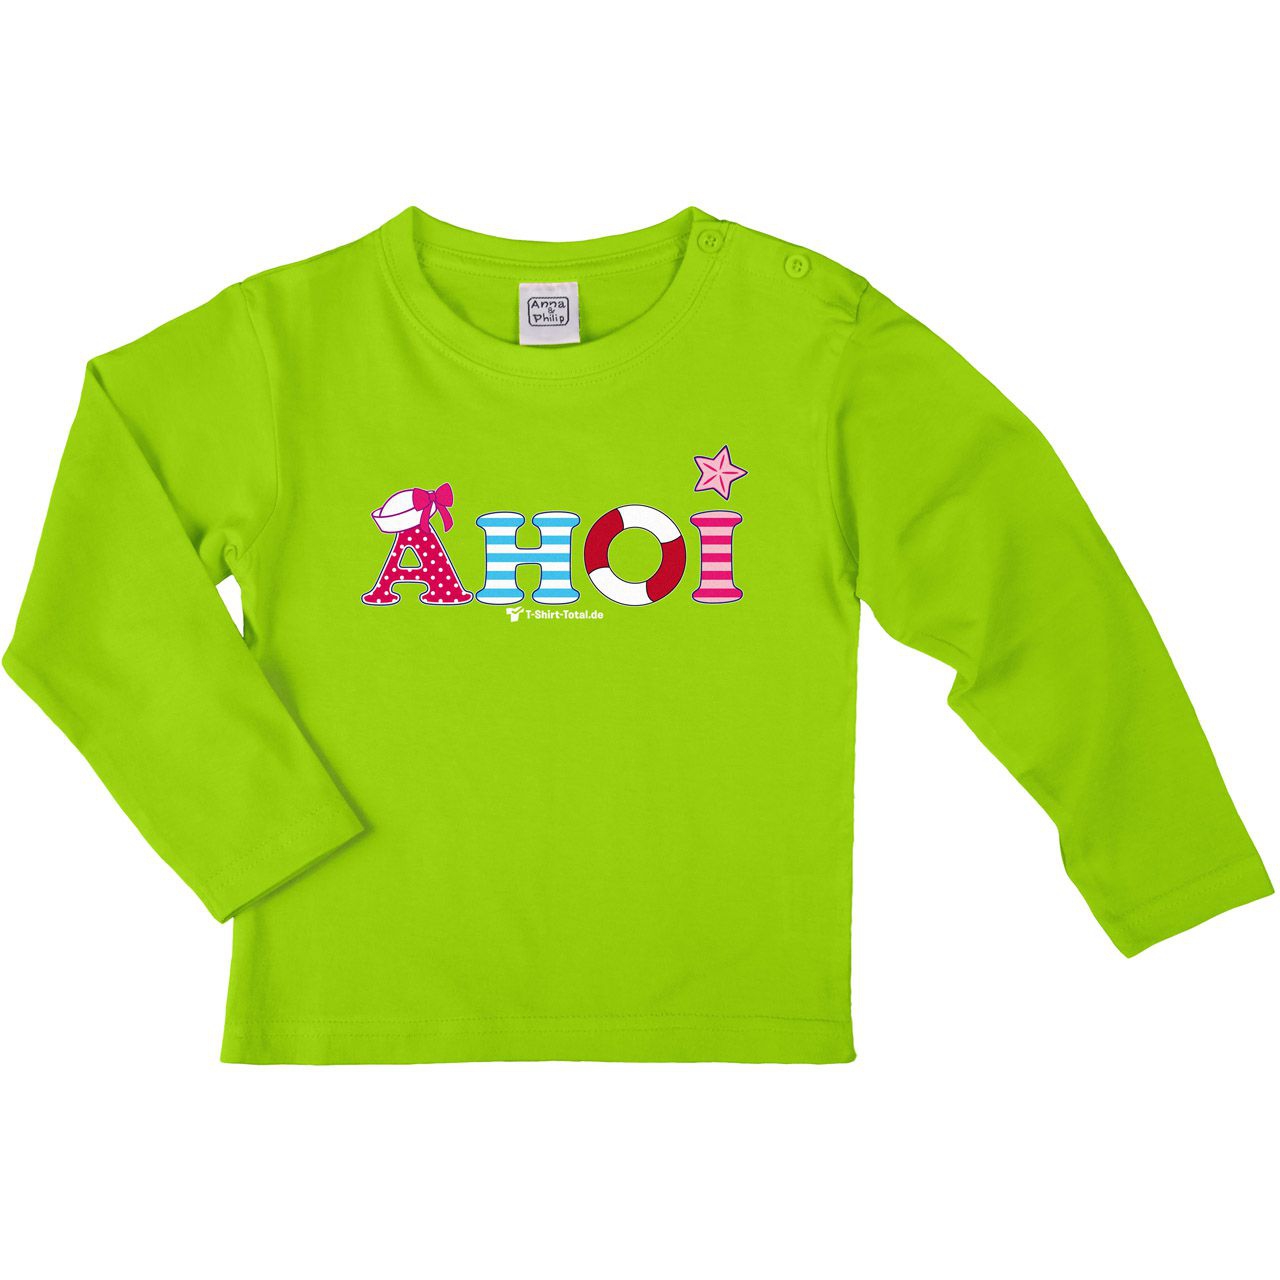 Ahoi Schleife Kinder Langarm Shirt hellgrün 104